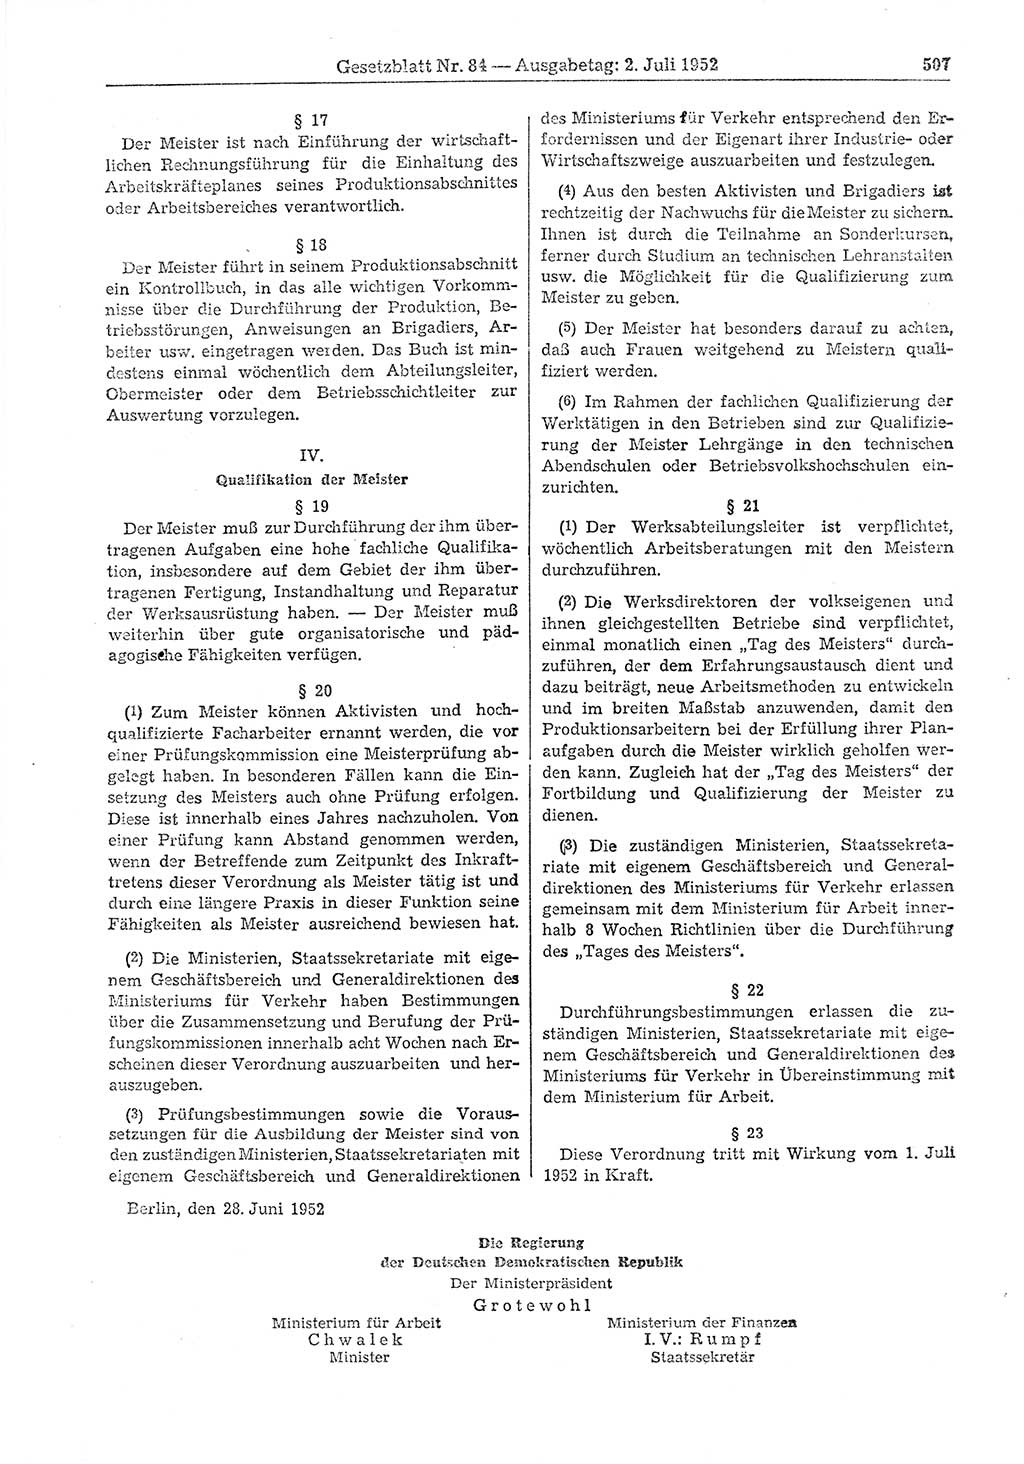 Gesetzblatt (GBl.) der Deutschen Demokratischen Republik (DDR) 1952, Seite 507 (GBl. DDR 1952, S. 507)